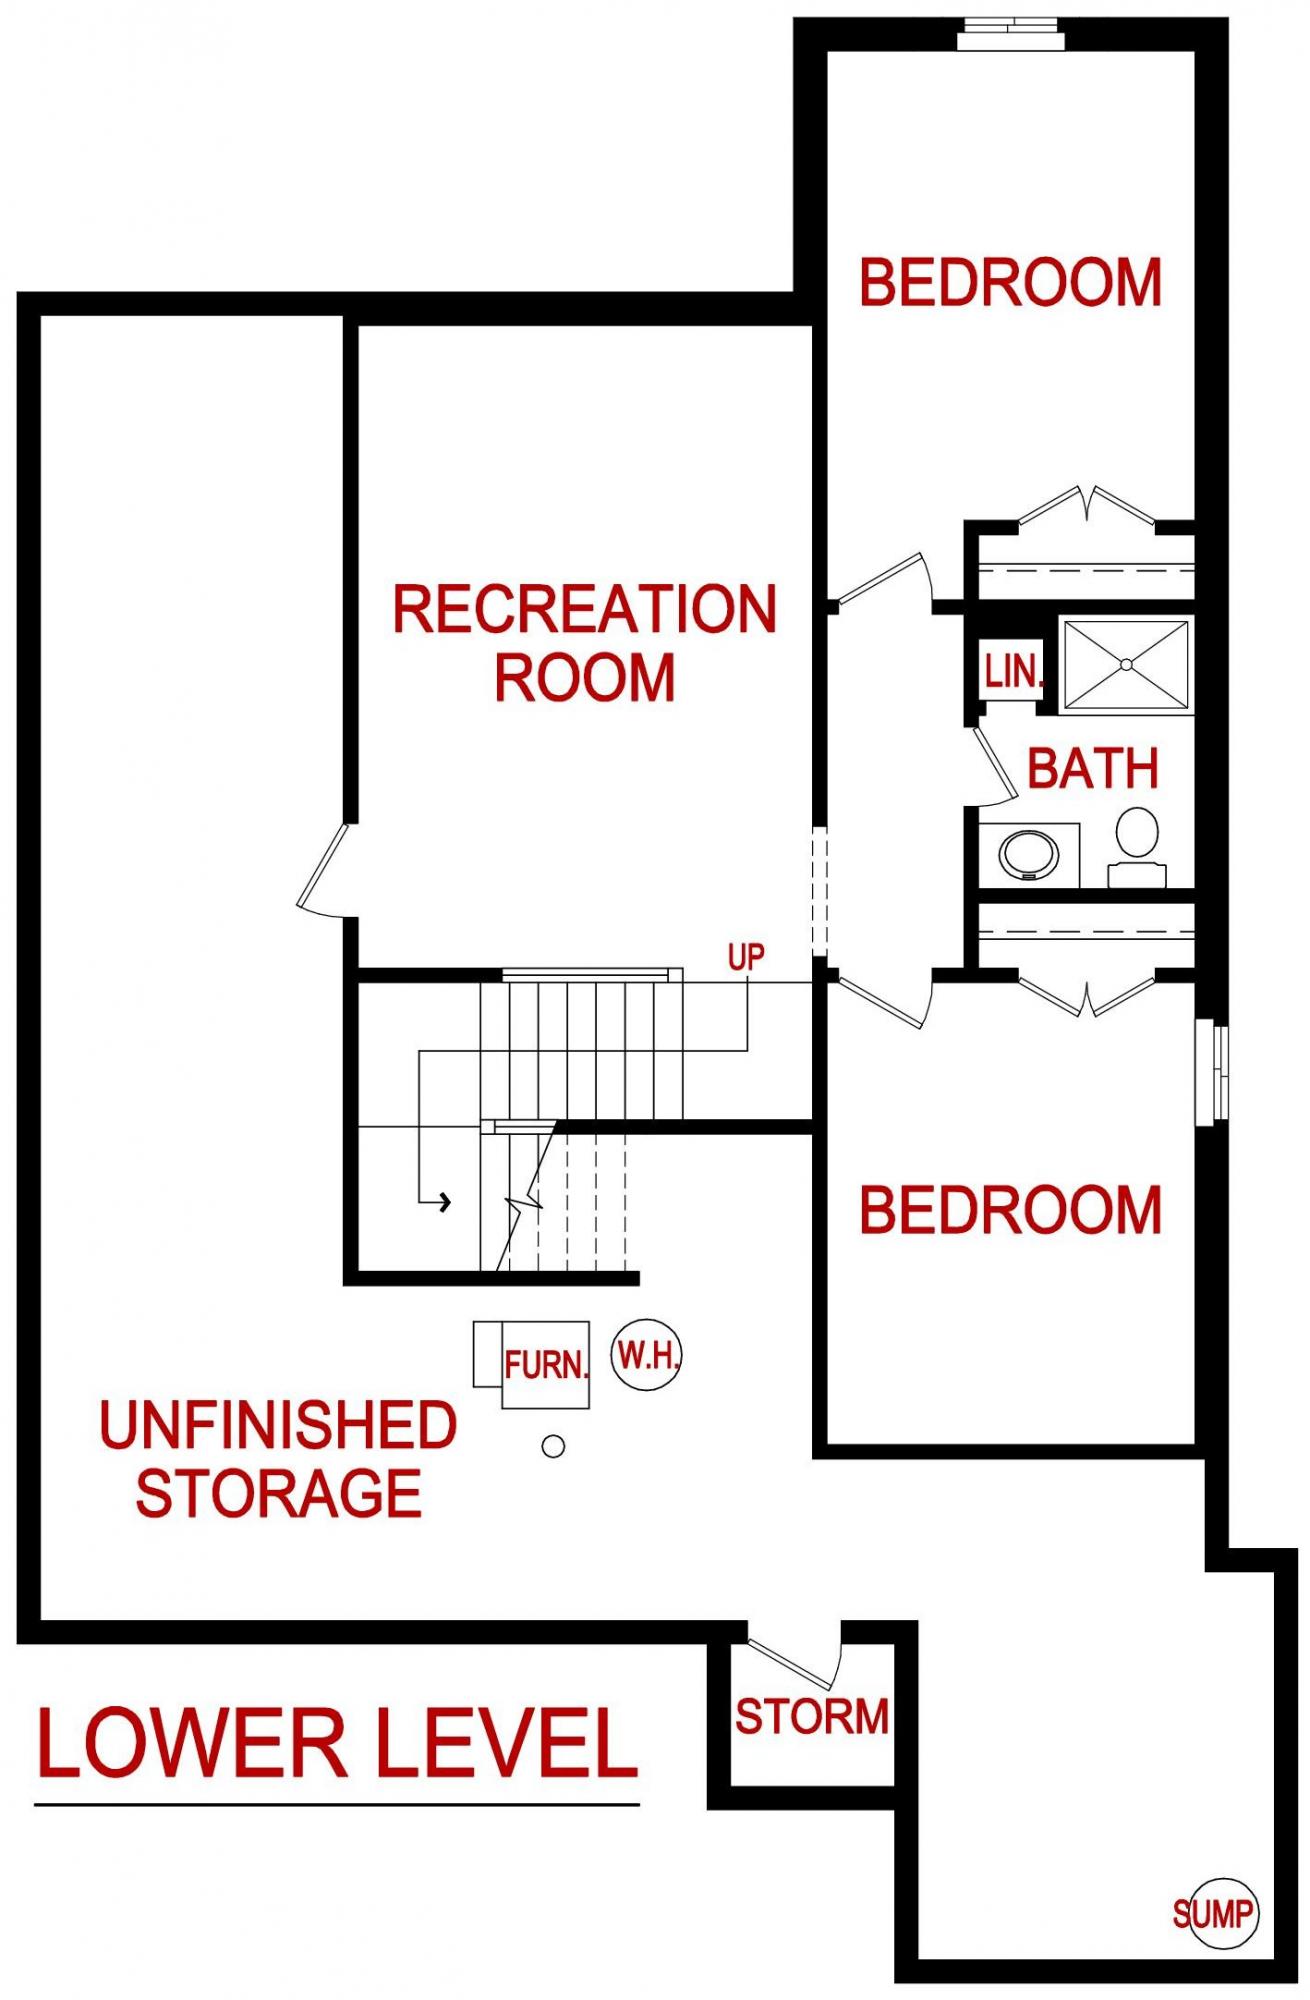 Lower level floor plan for the berkley model from Lambie custom homes